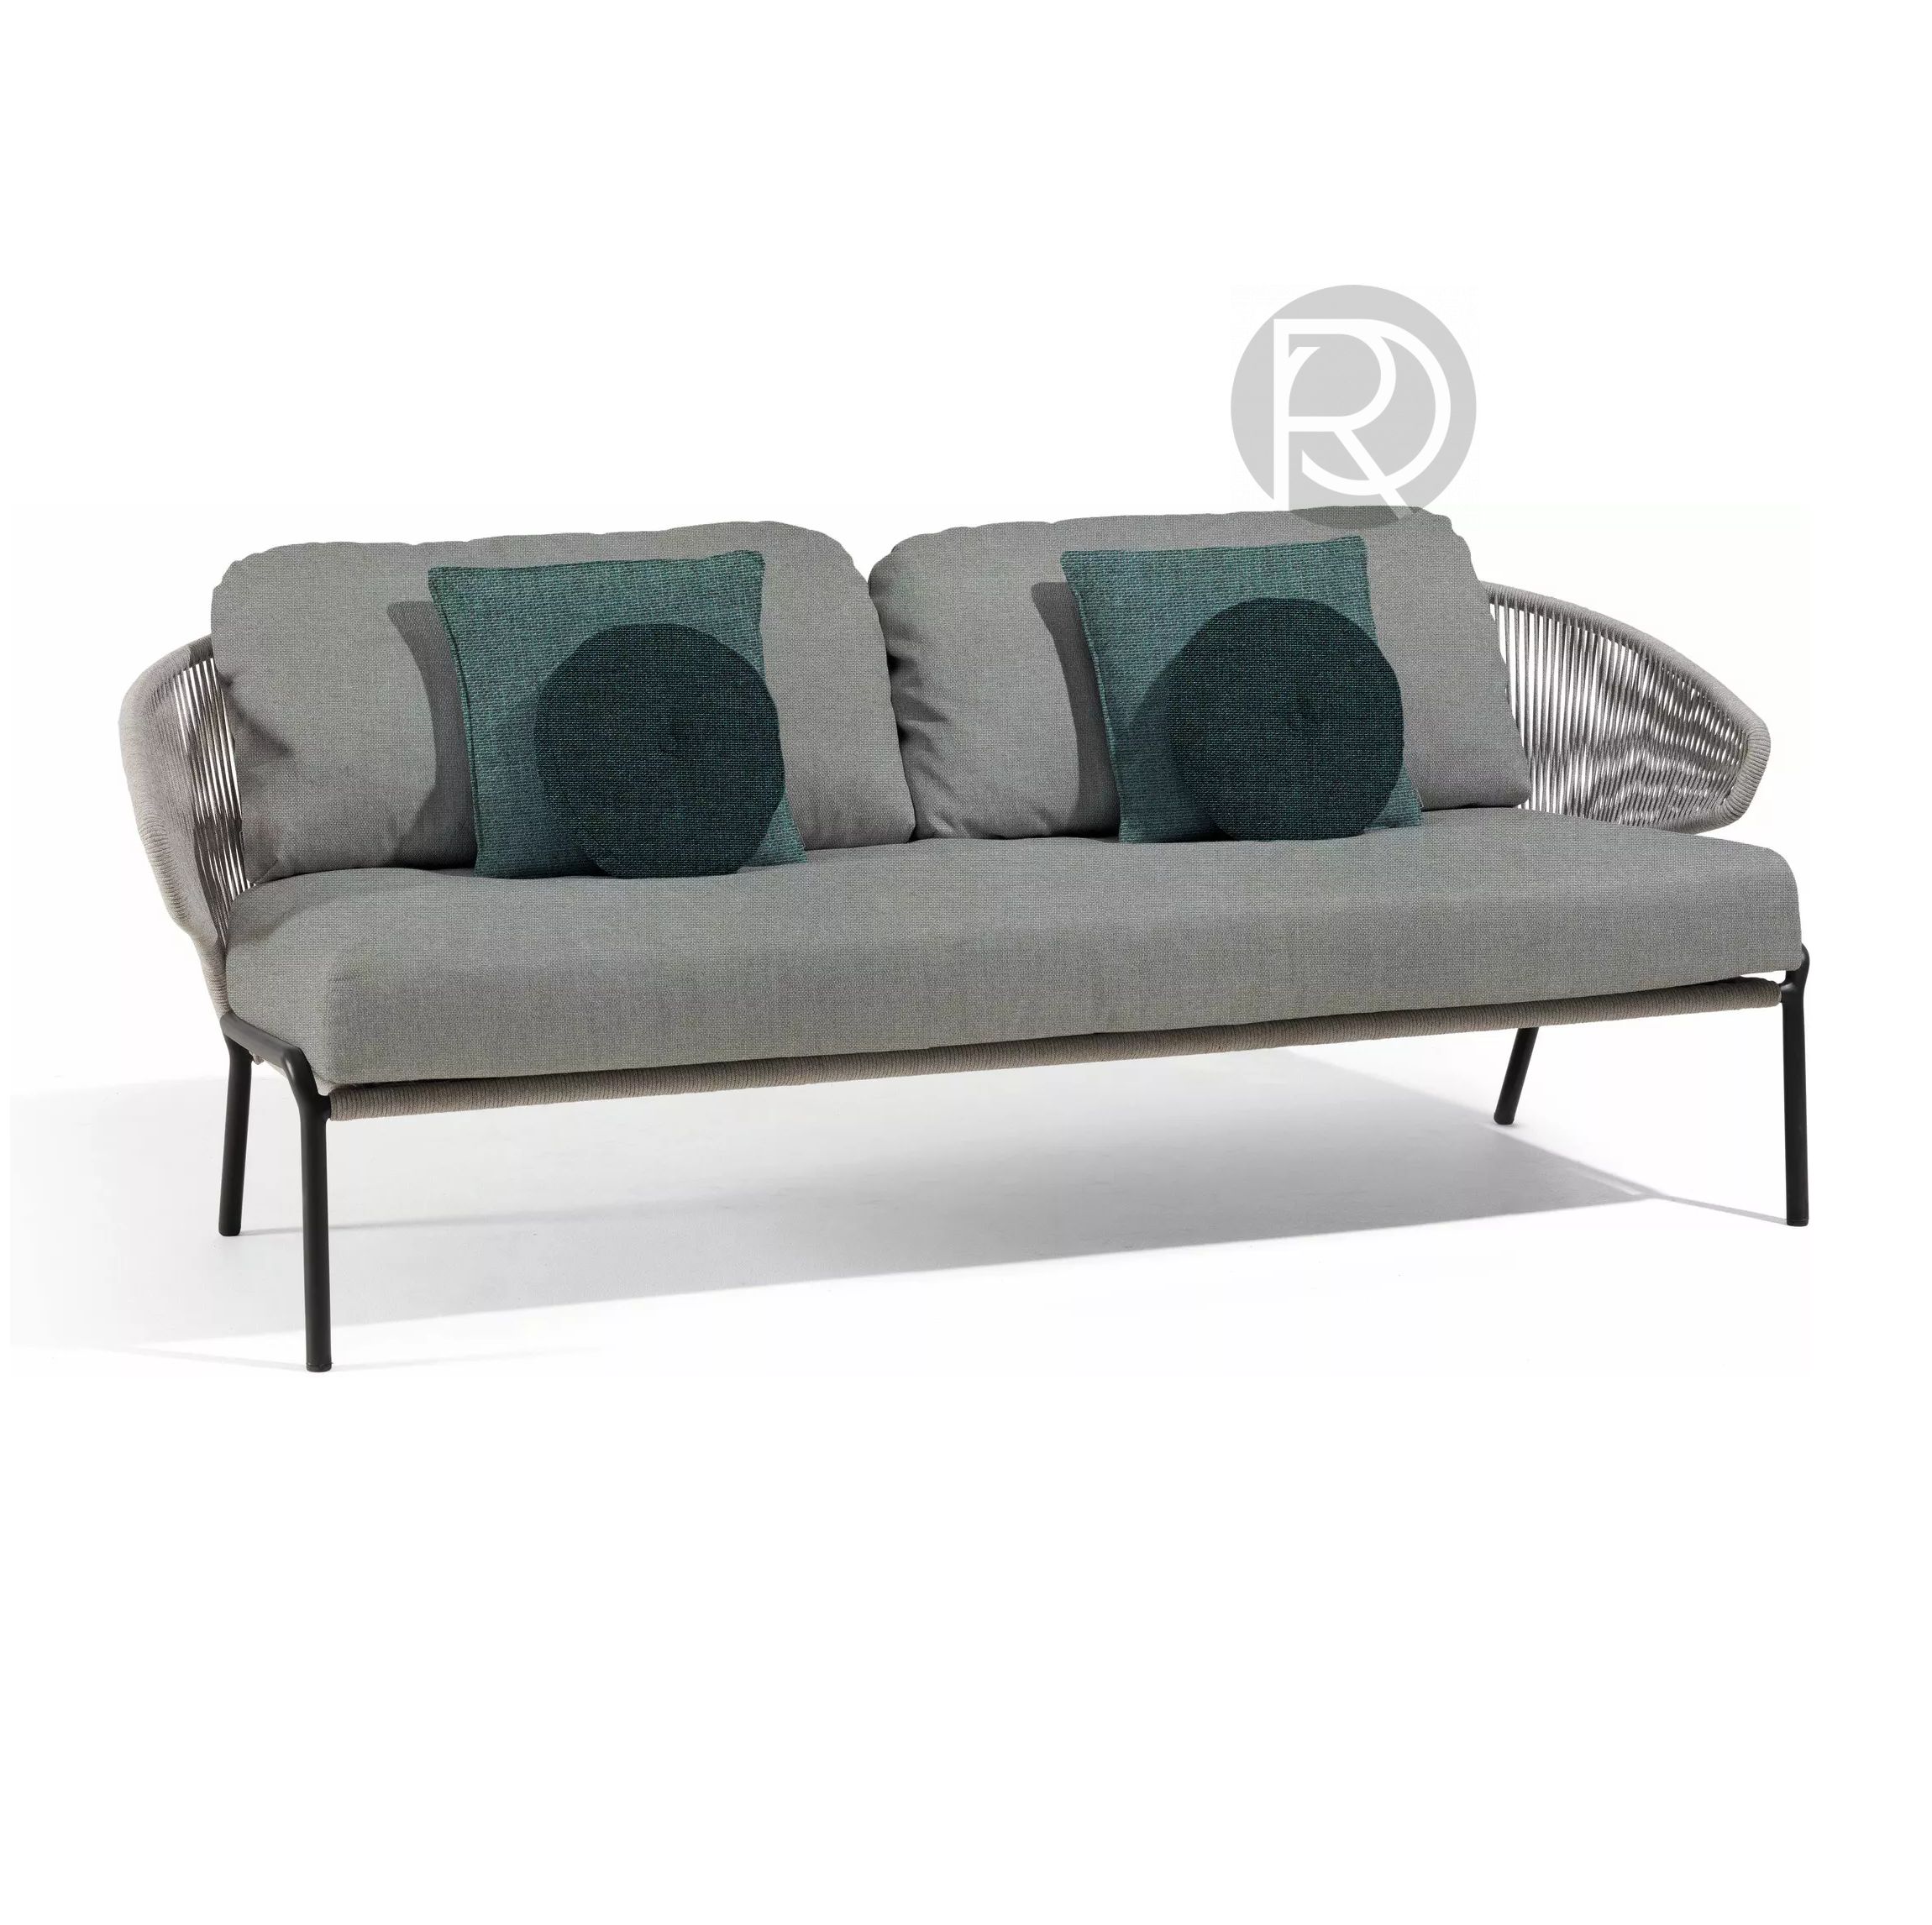 Sofa RADOC by Manutti